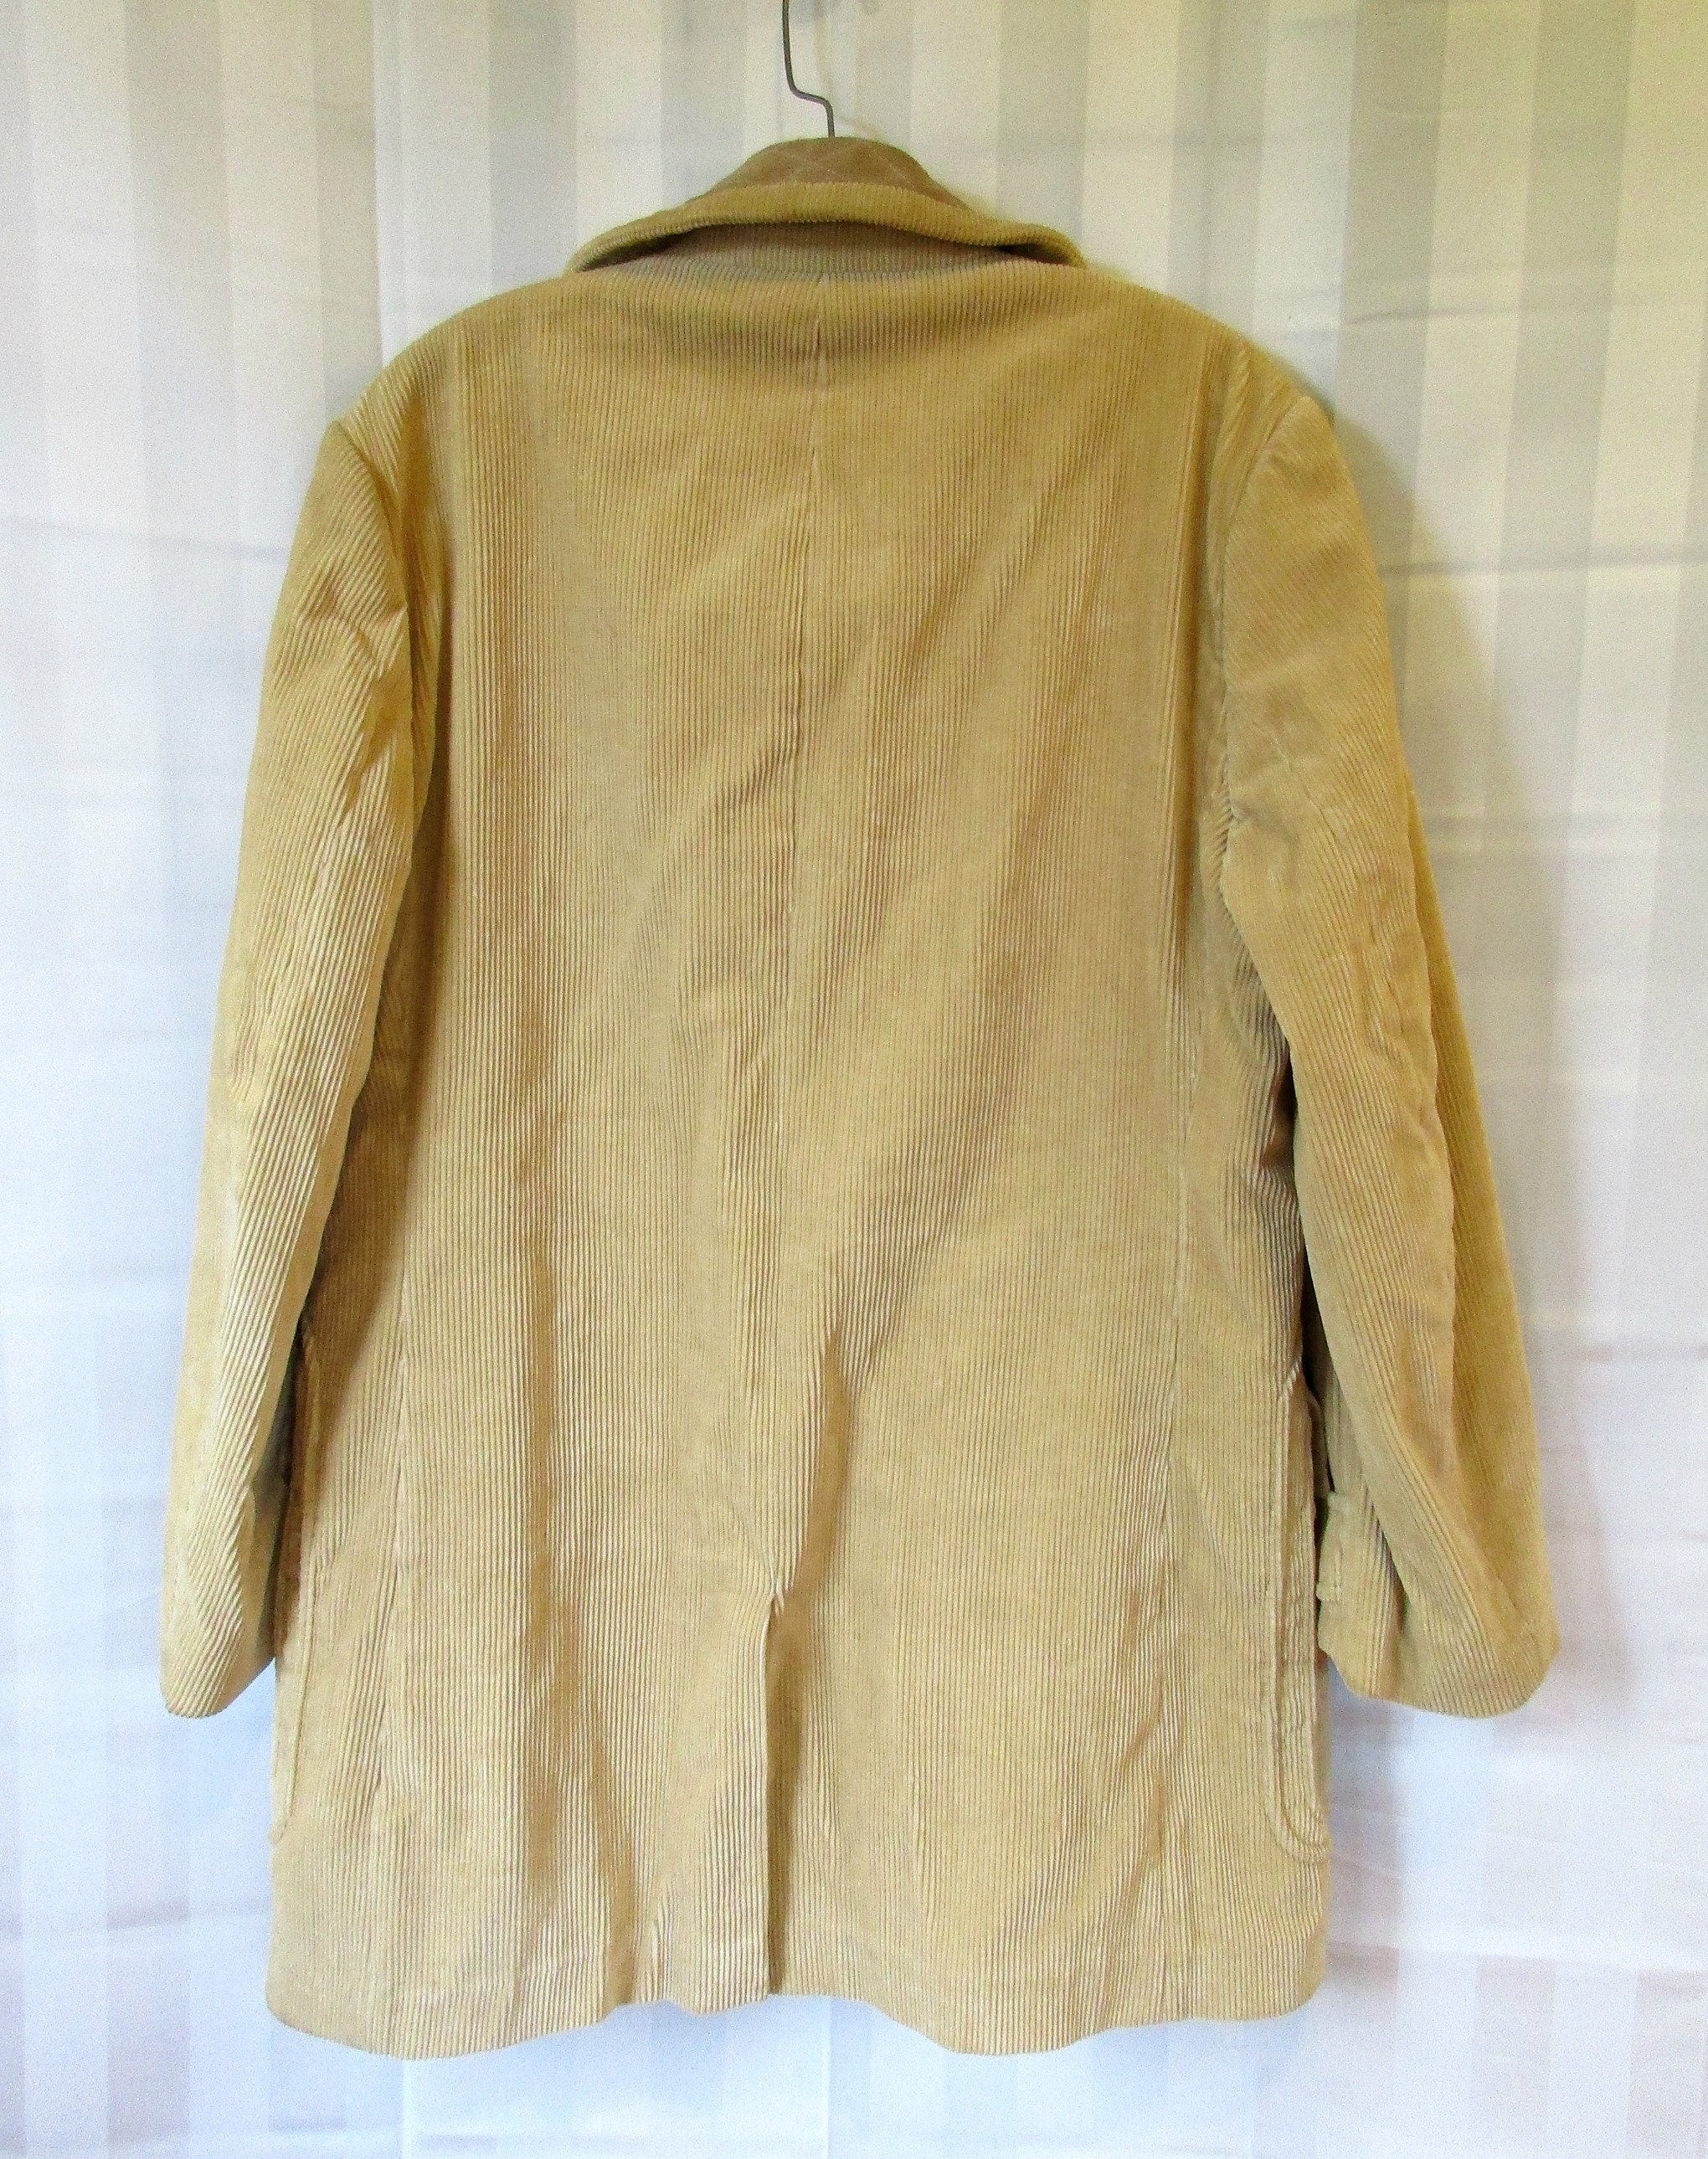 Vintage 1970s Jacket Beige Corduroy and Suede Short Coat Wool - Etsy